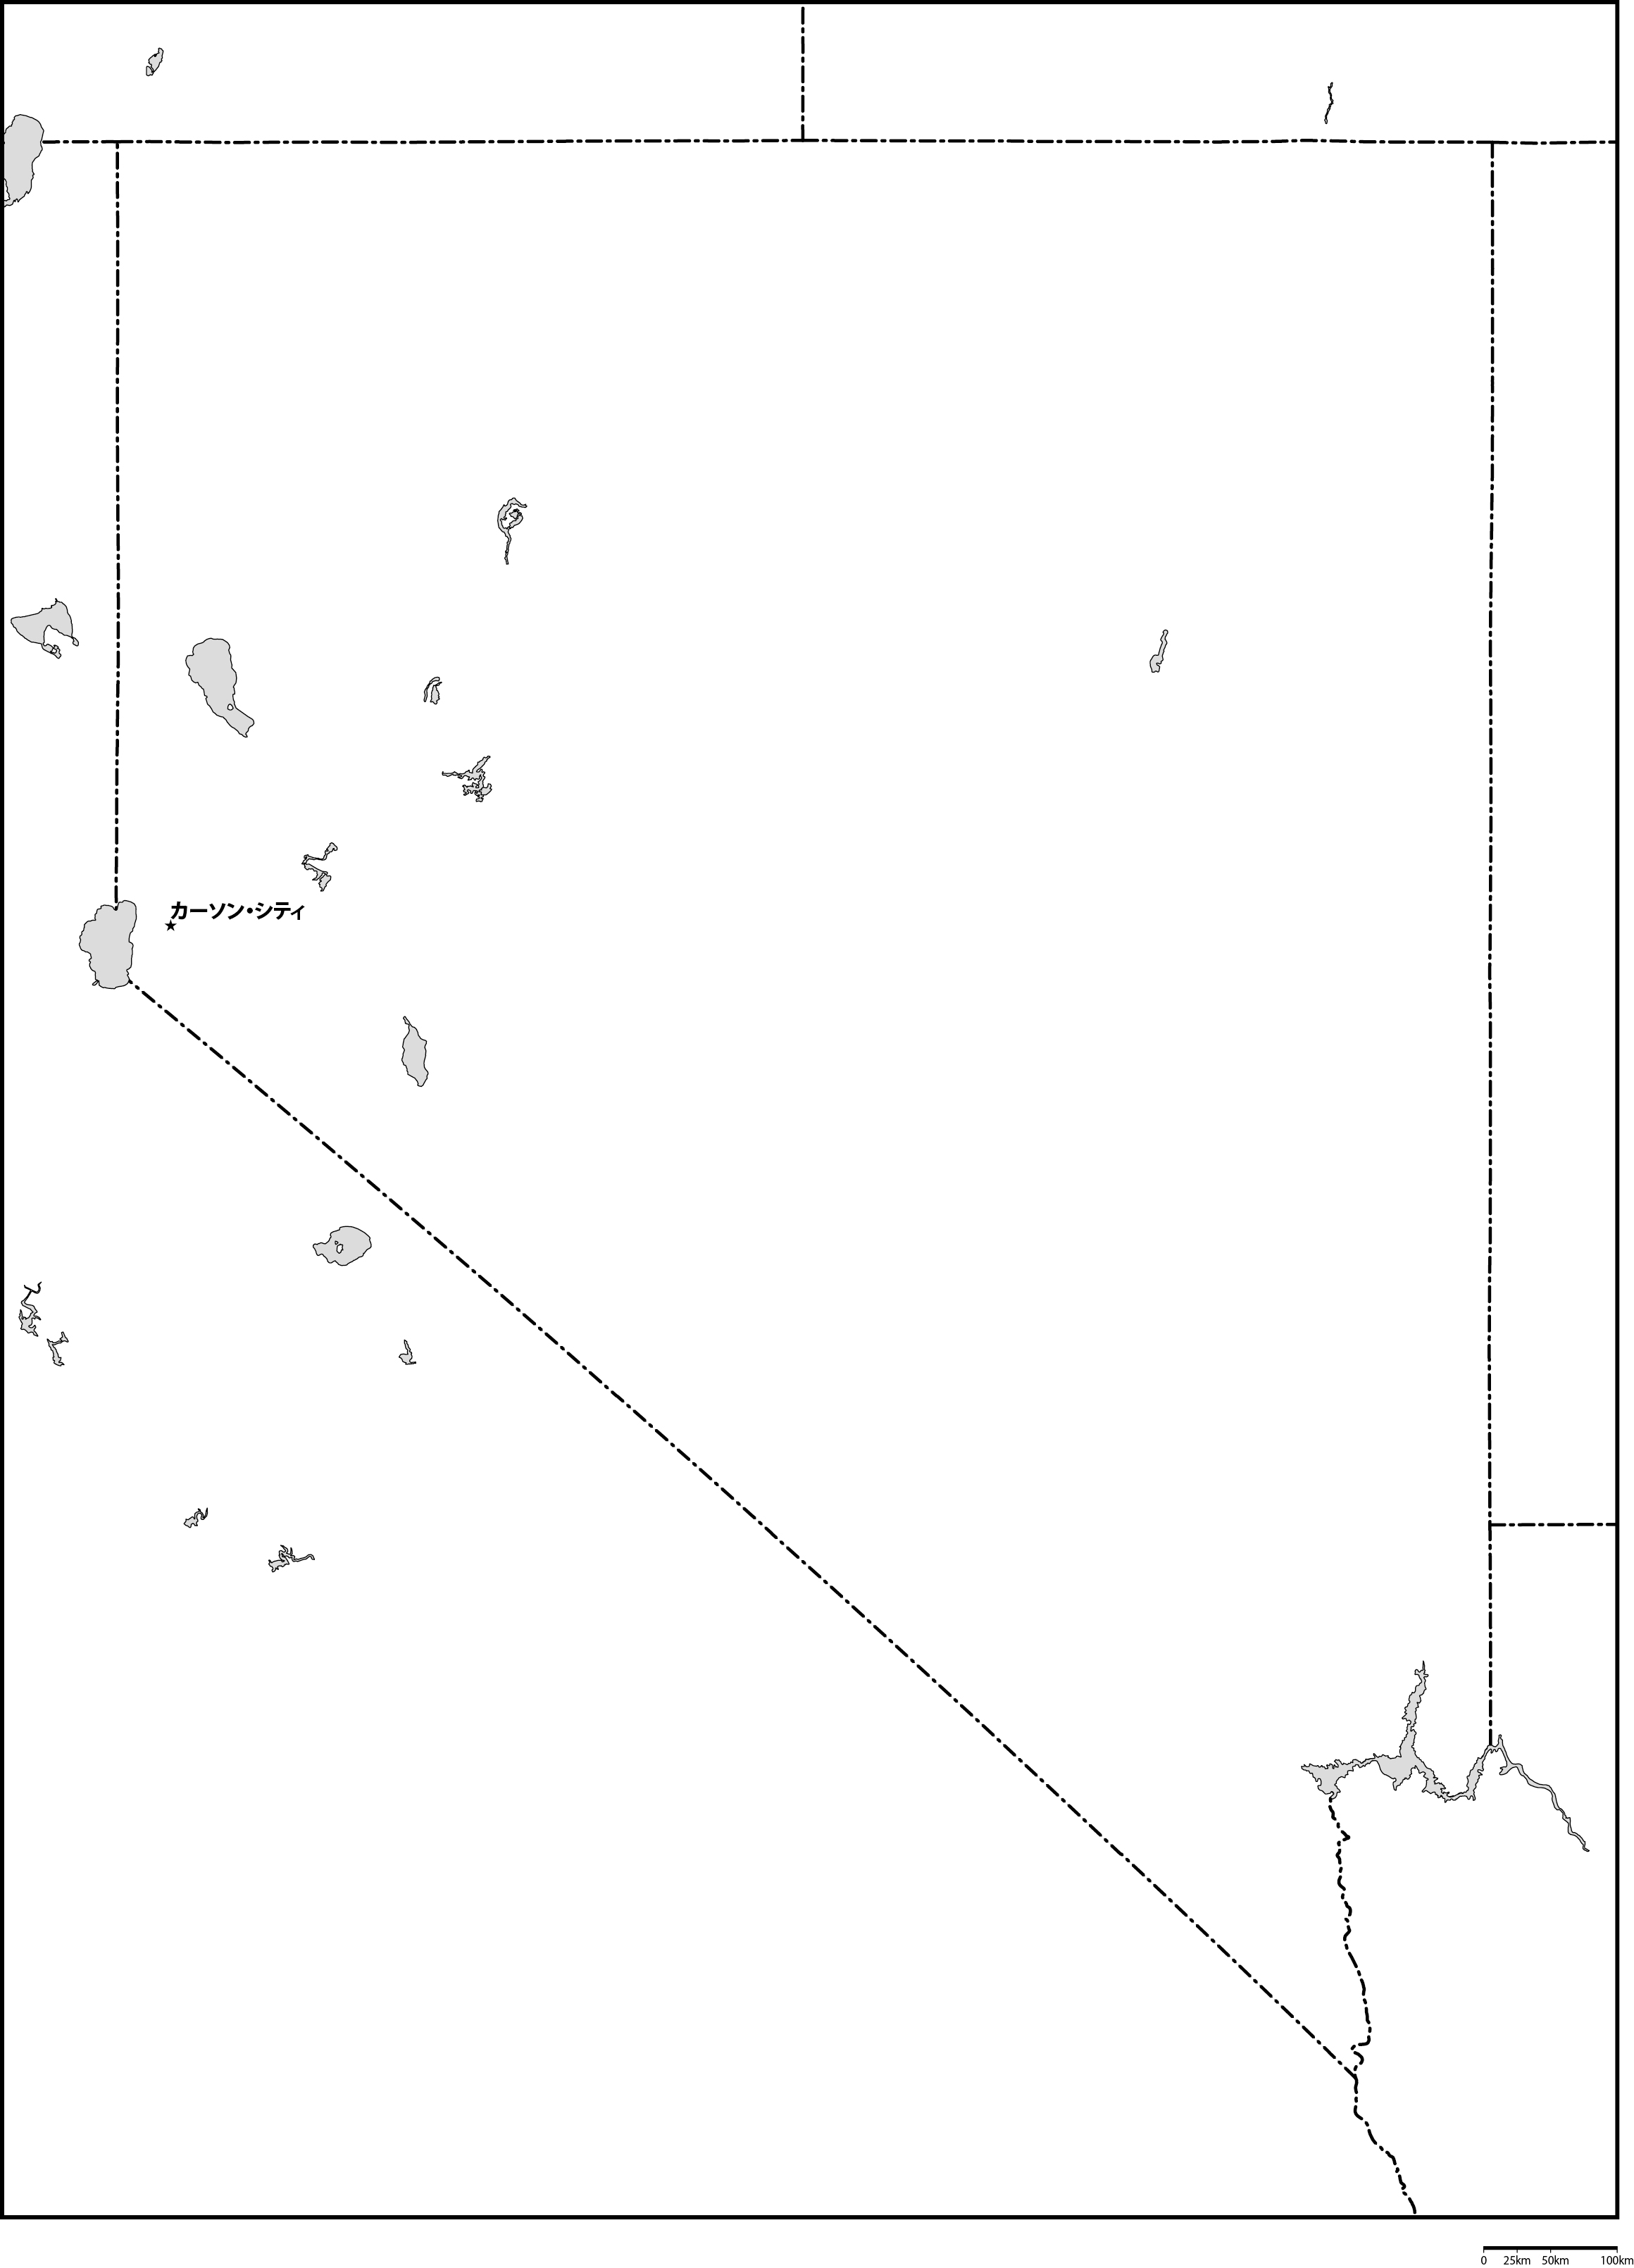 ネバダ州白地図州都あり(日本語)フリーデータの画像